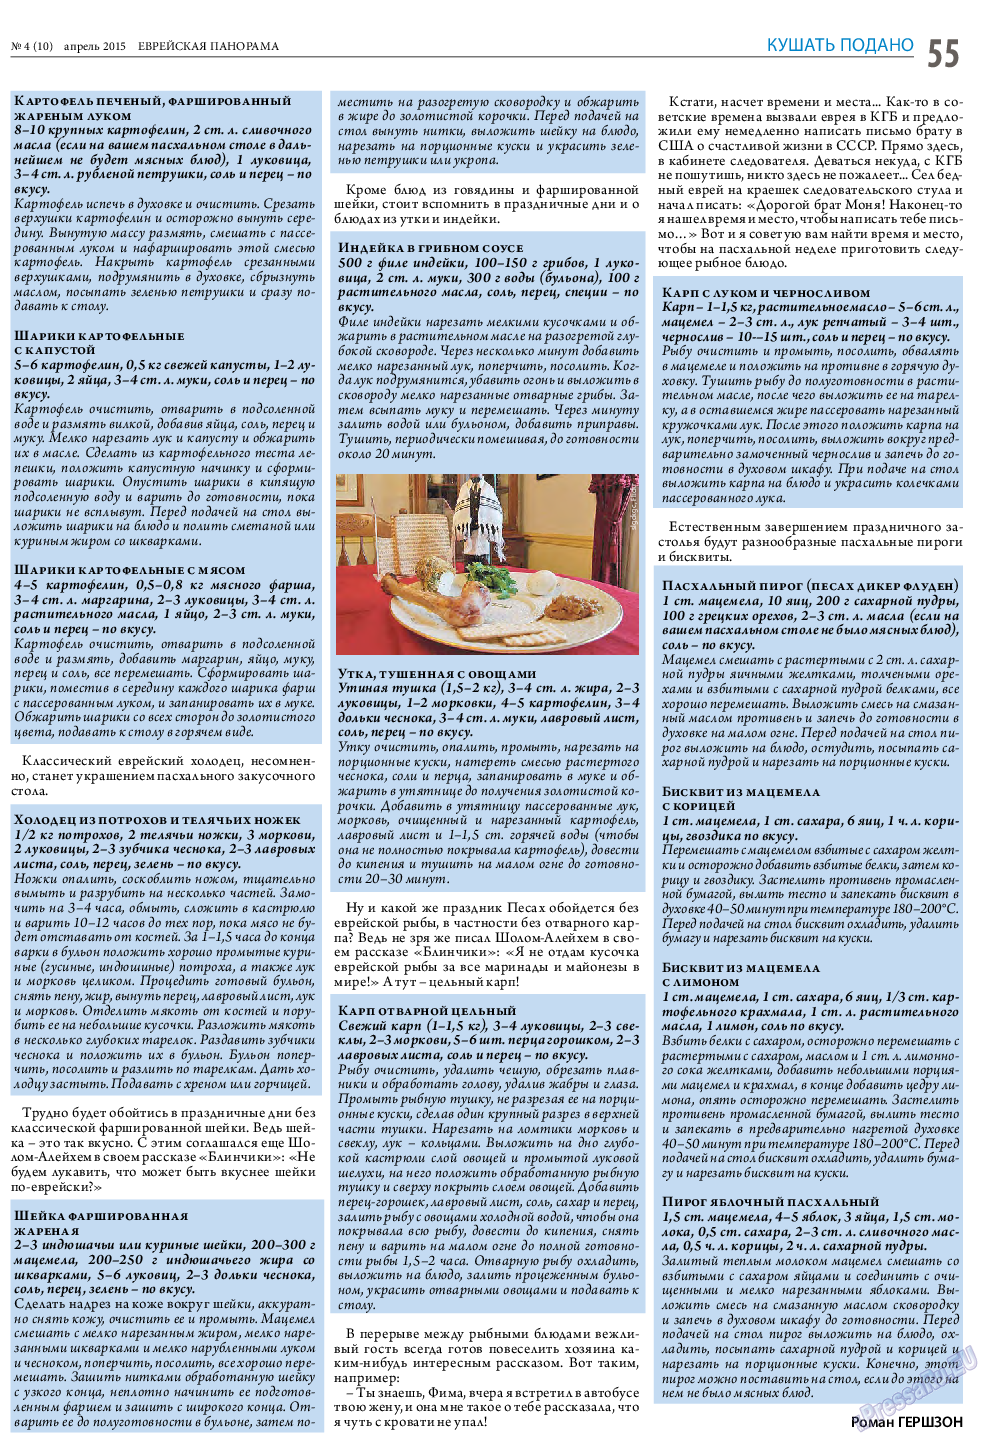 Еврейская панорама (газета). 2015 год, номер 4, стр. 55